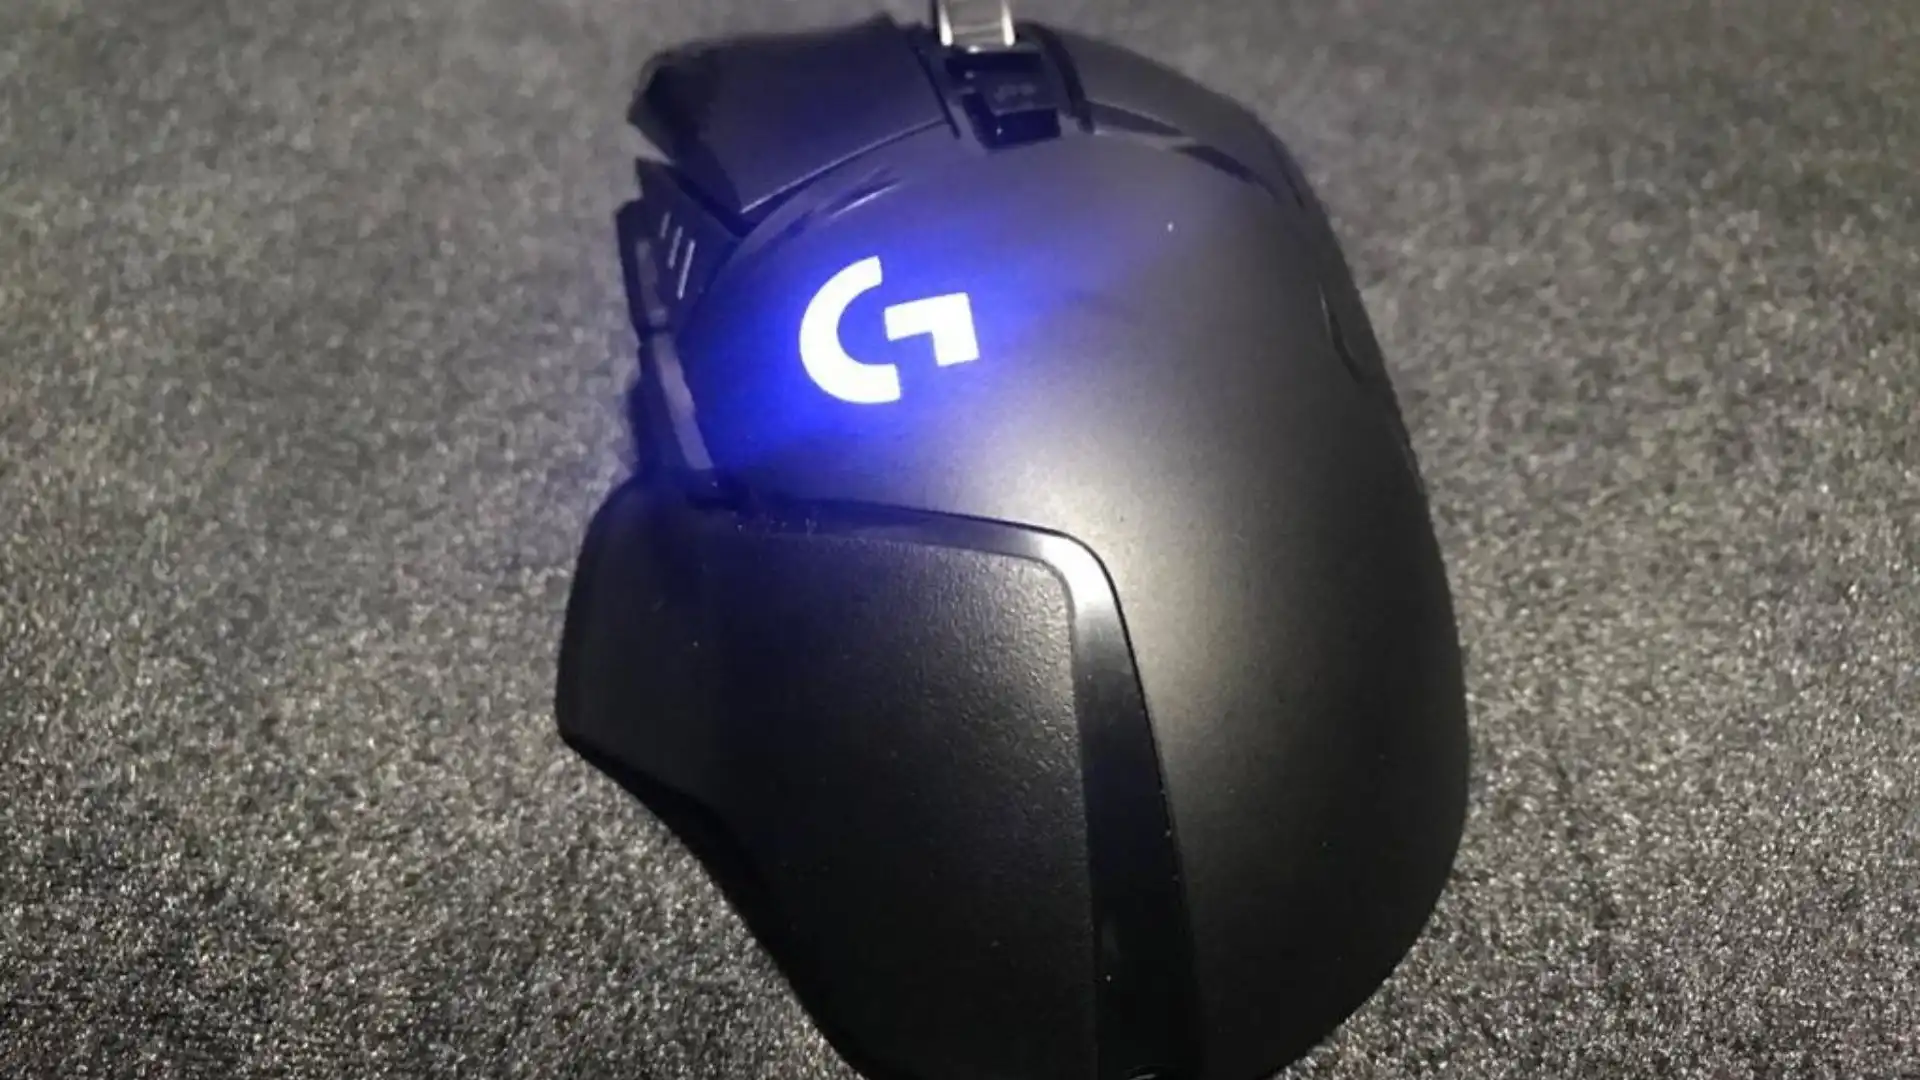 Mouse gamer Logitech G502 Lightspeed preto com logo no corpo do mouse com iluminação RGB azul